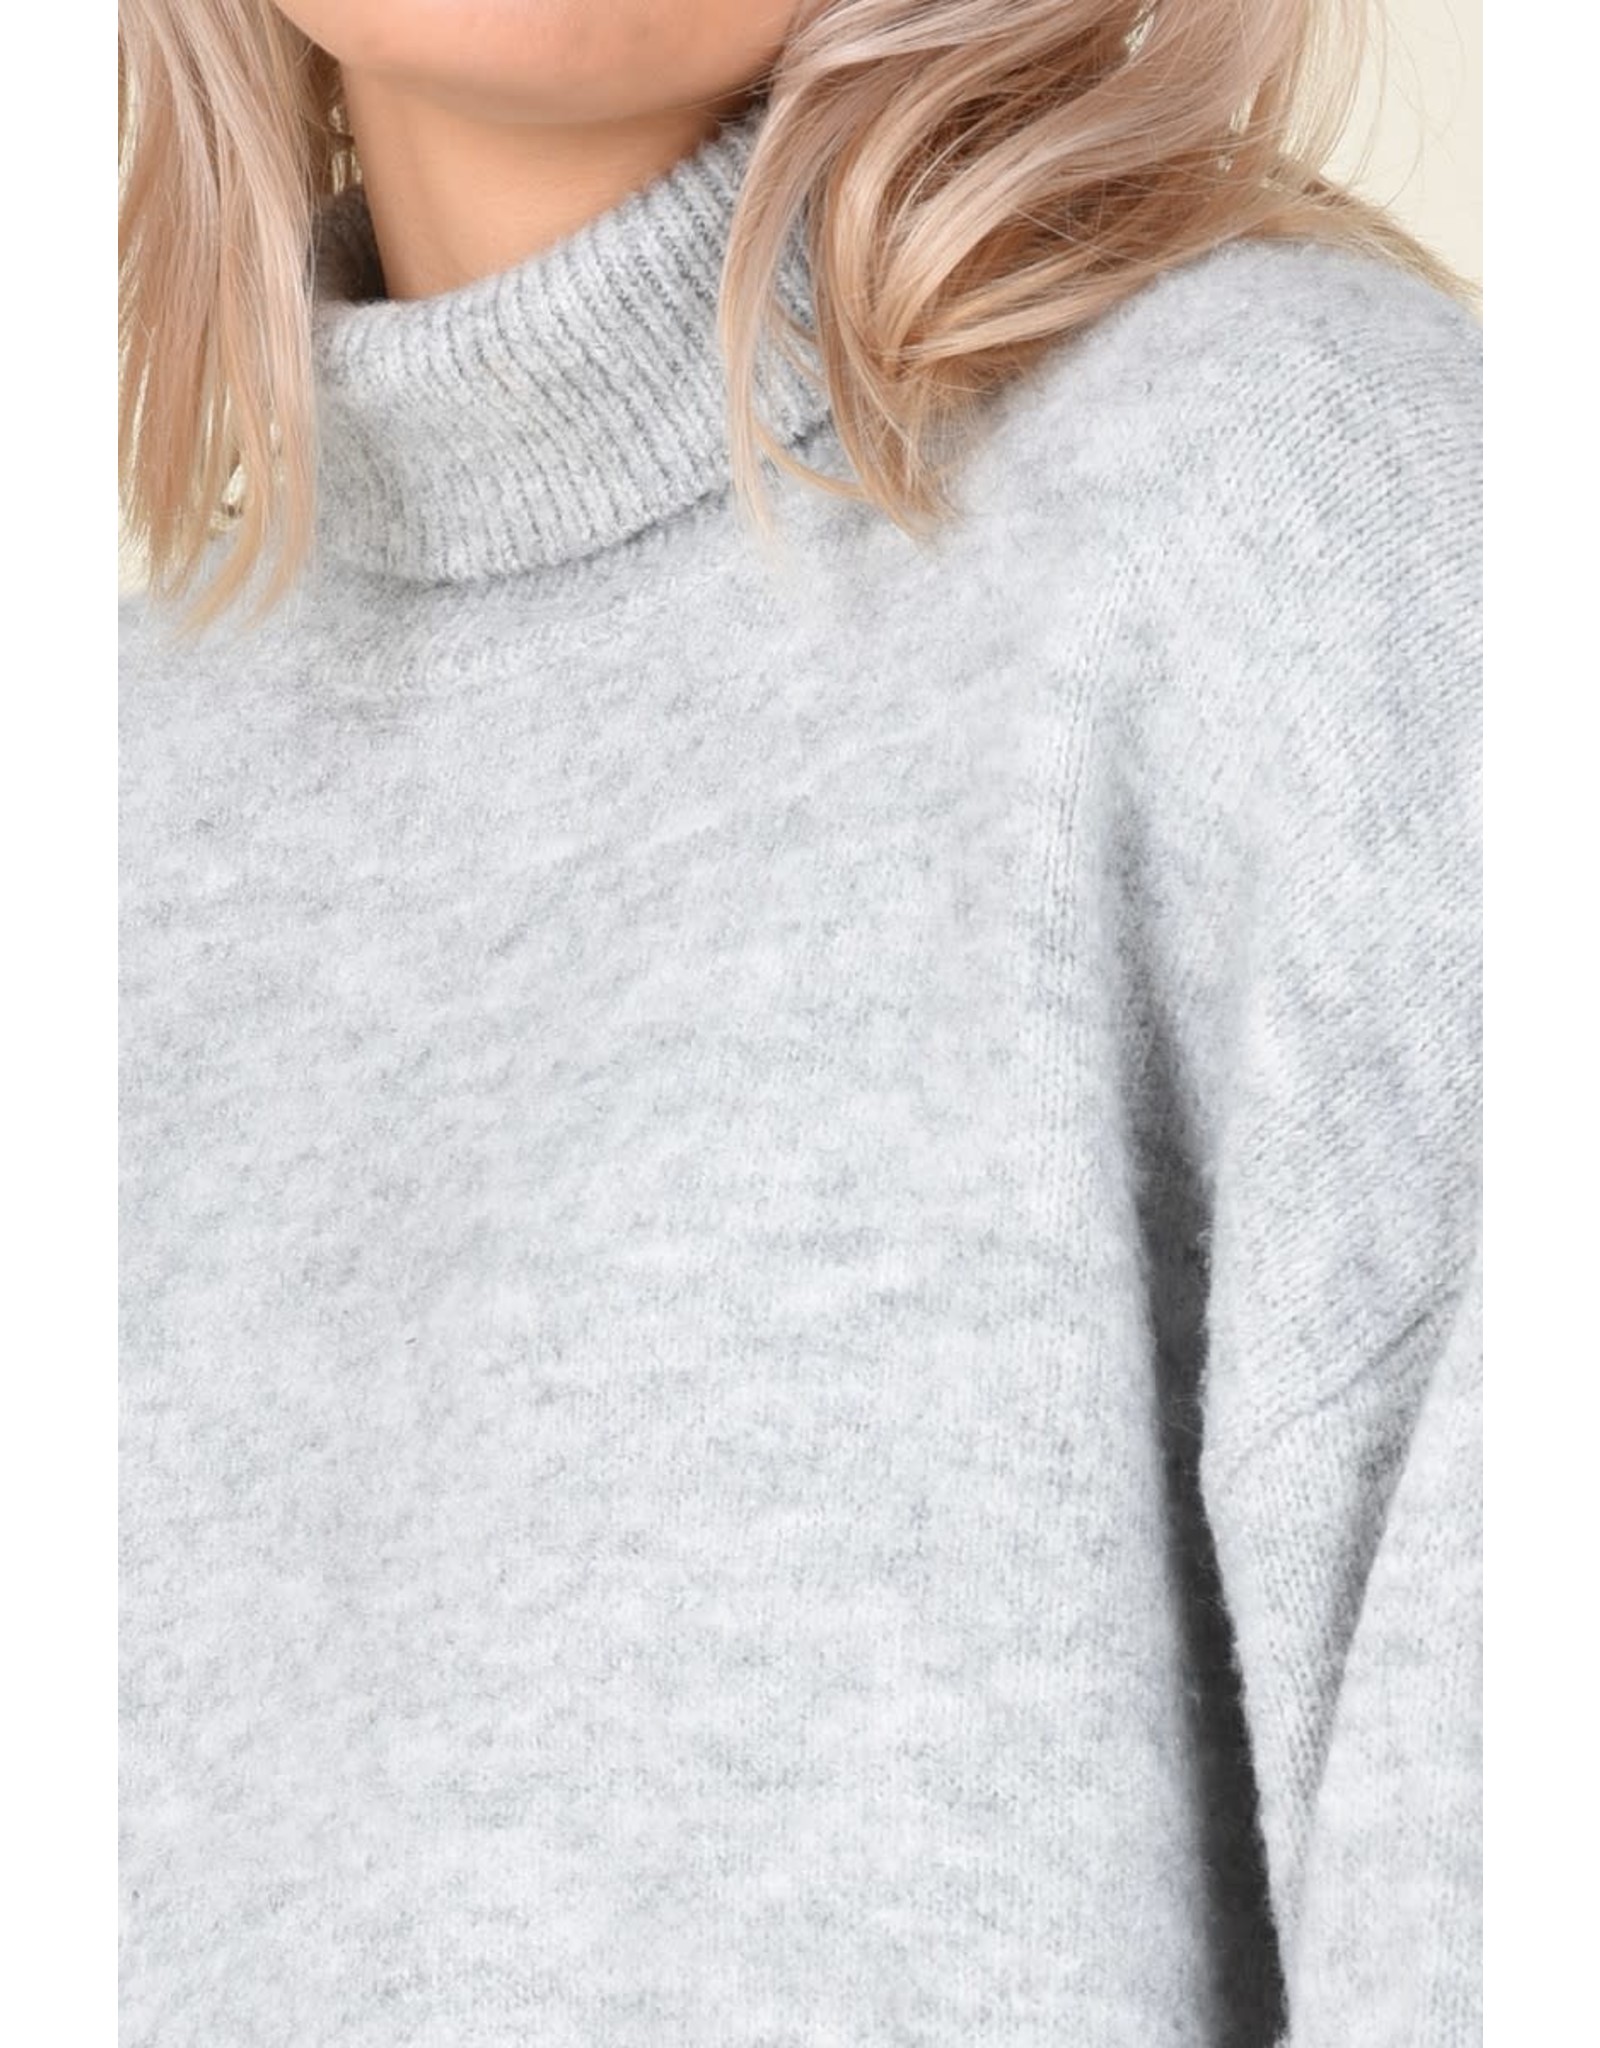 Molly Bracken Molly Bracken - Knit sweater (grey)